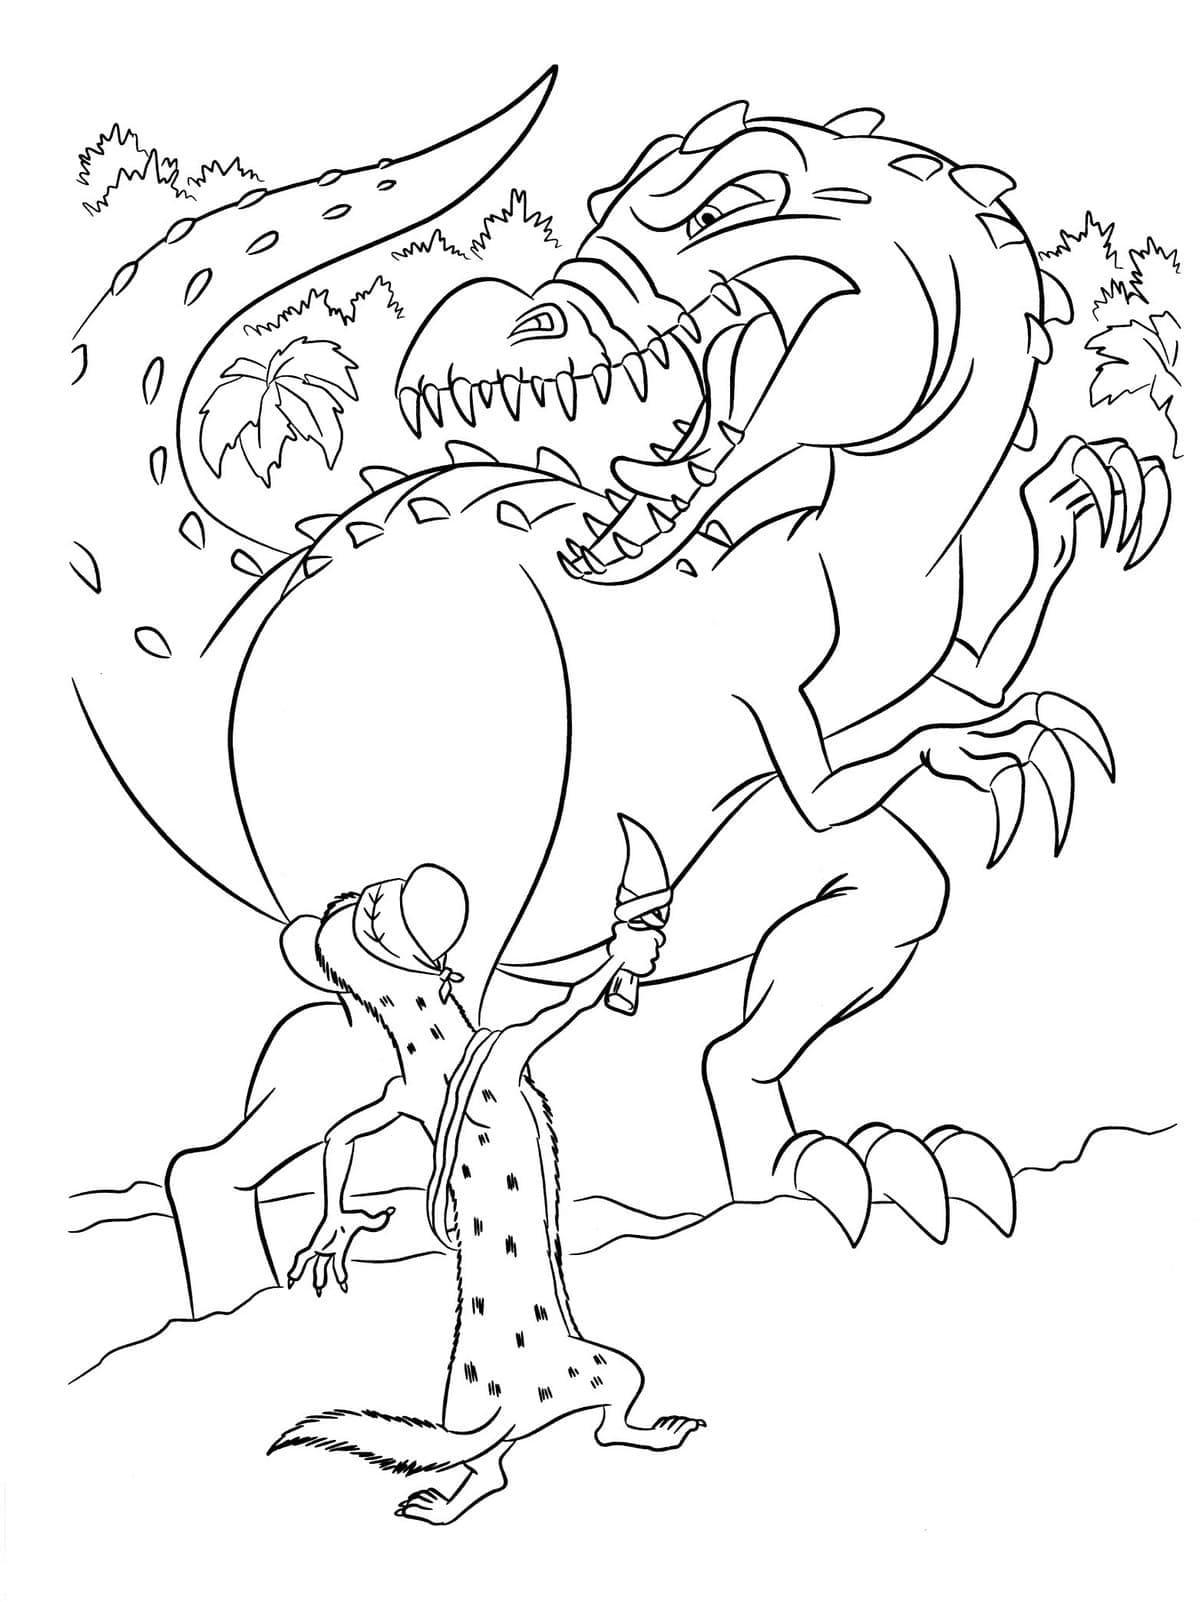 Âge de Glace Buck contre Dinosaure coloring page